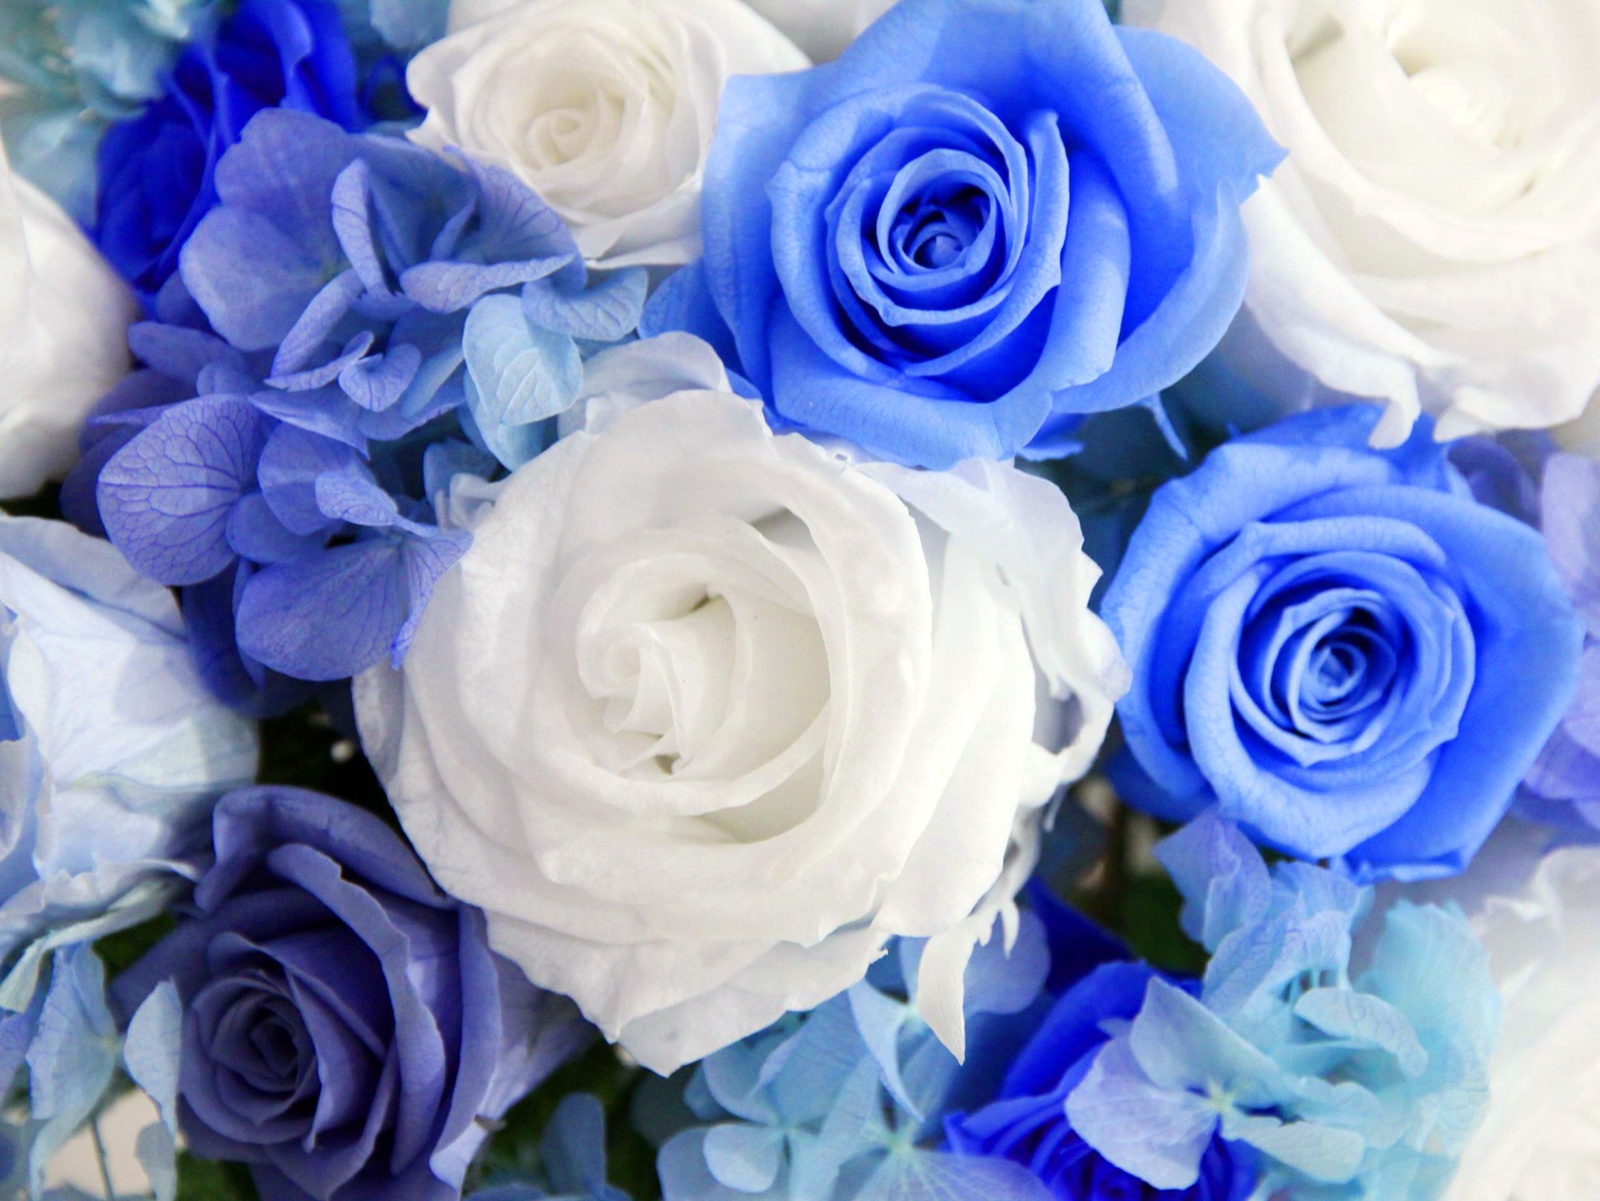 Hình ảnh những bông hoa hồng xanh tuyệt đẹp